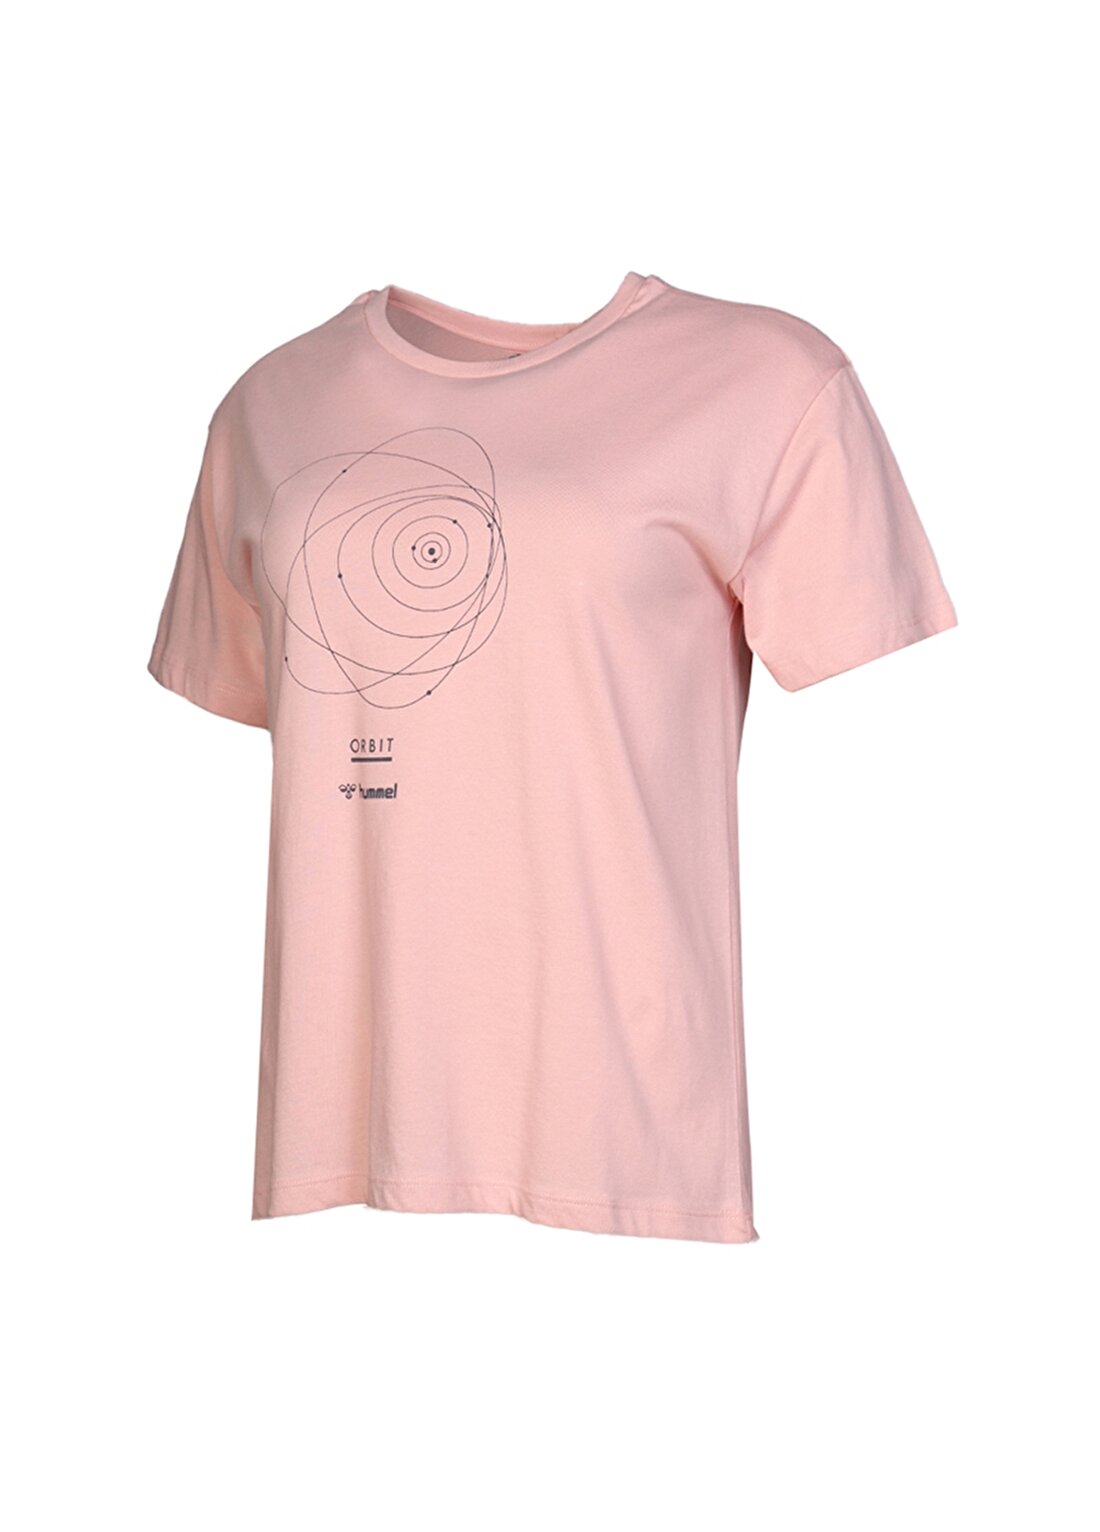 Hummel MELISSA T-SHIRT S/S TEE Pembe Kadın T-Shirt 911004-3932